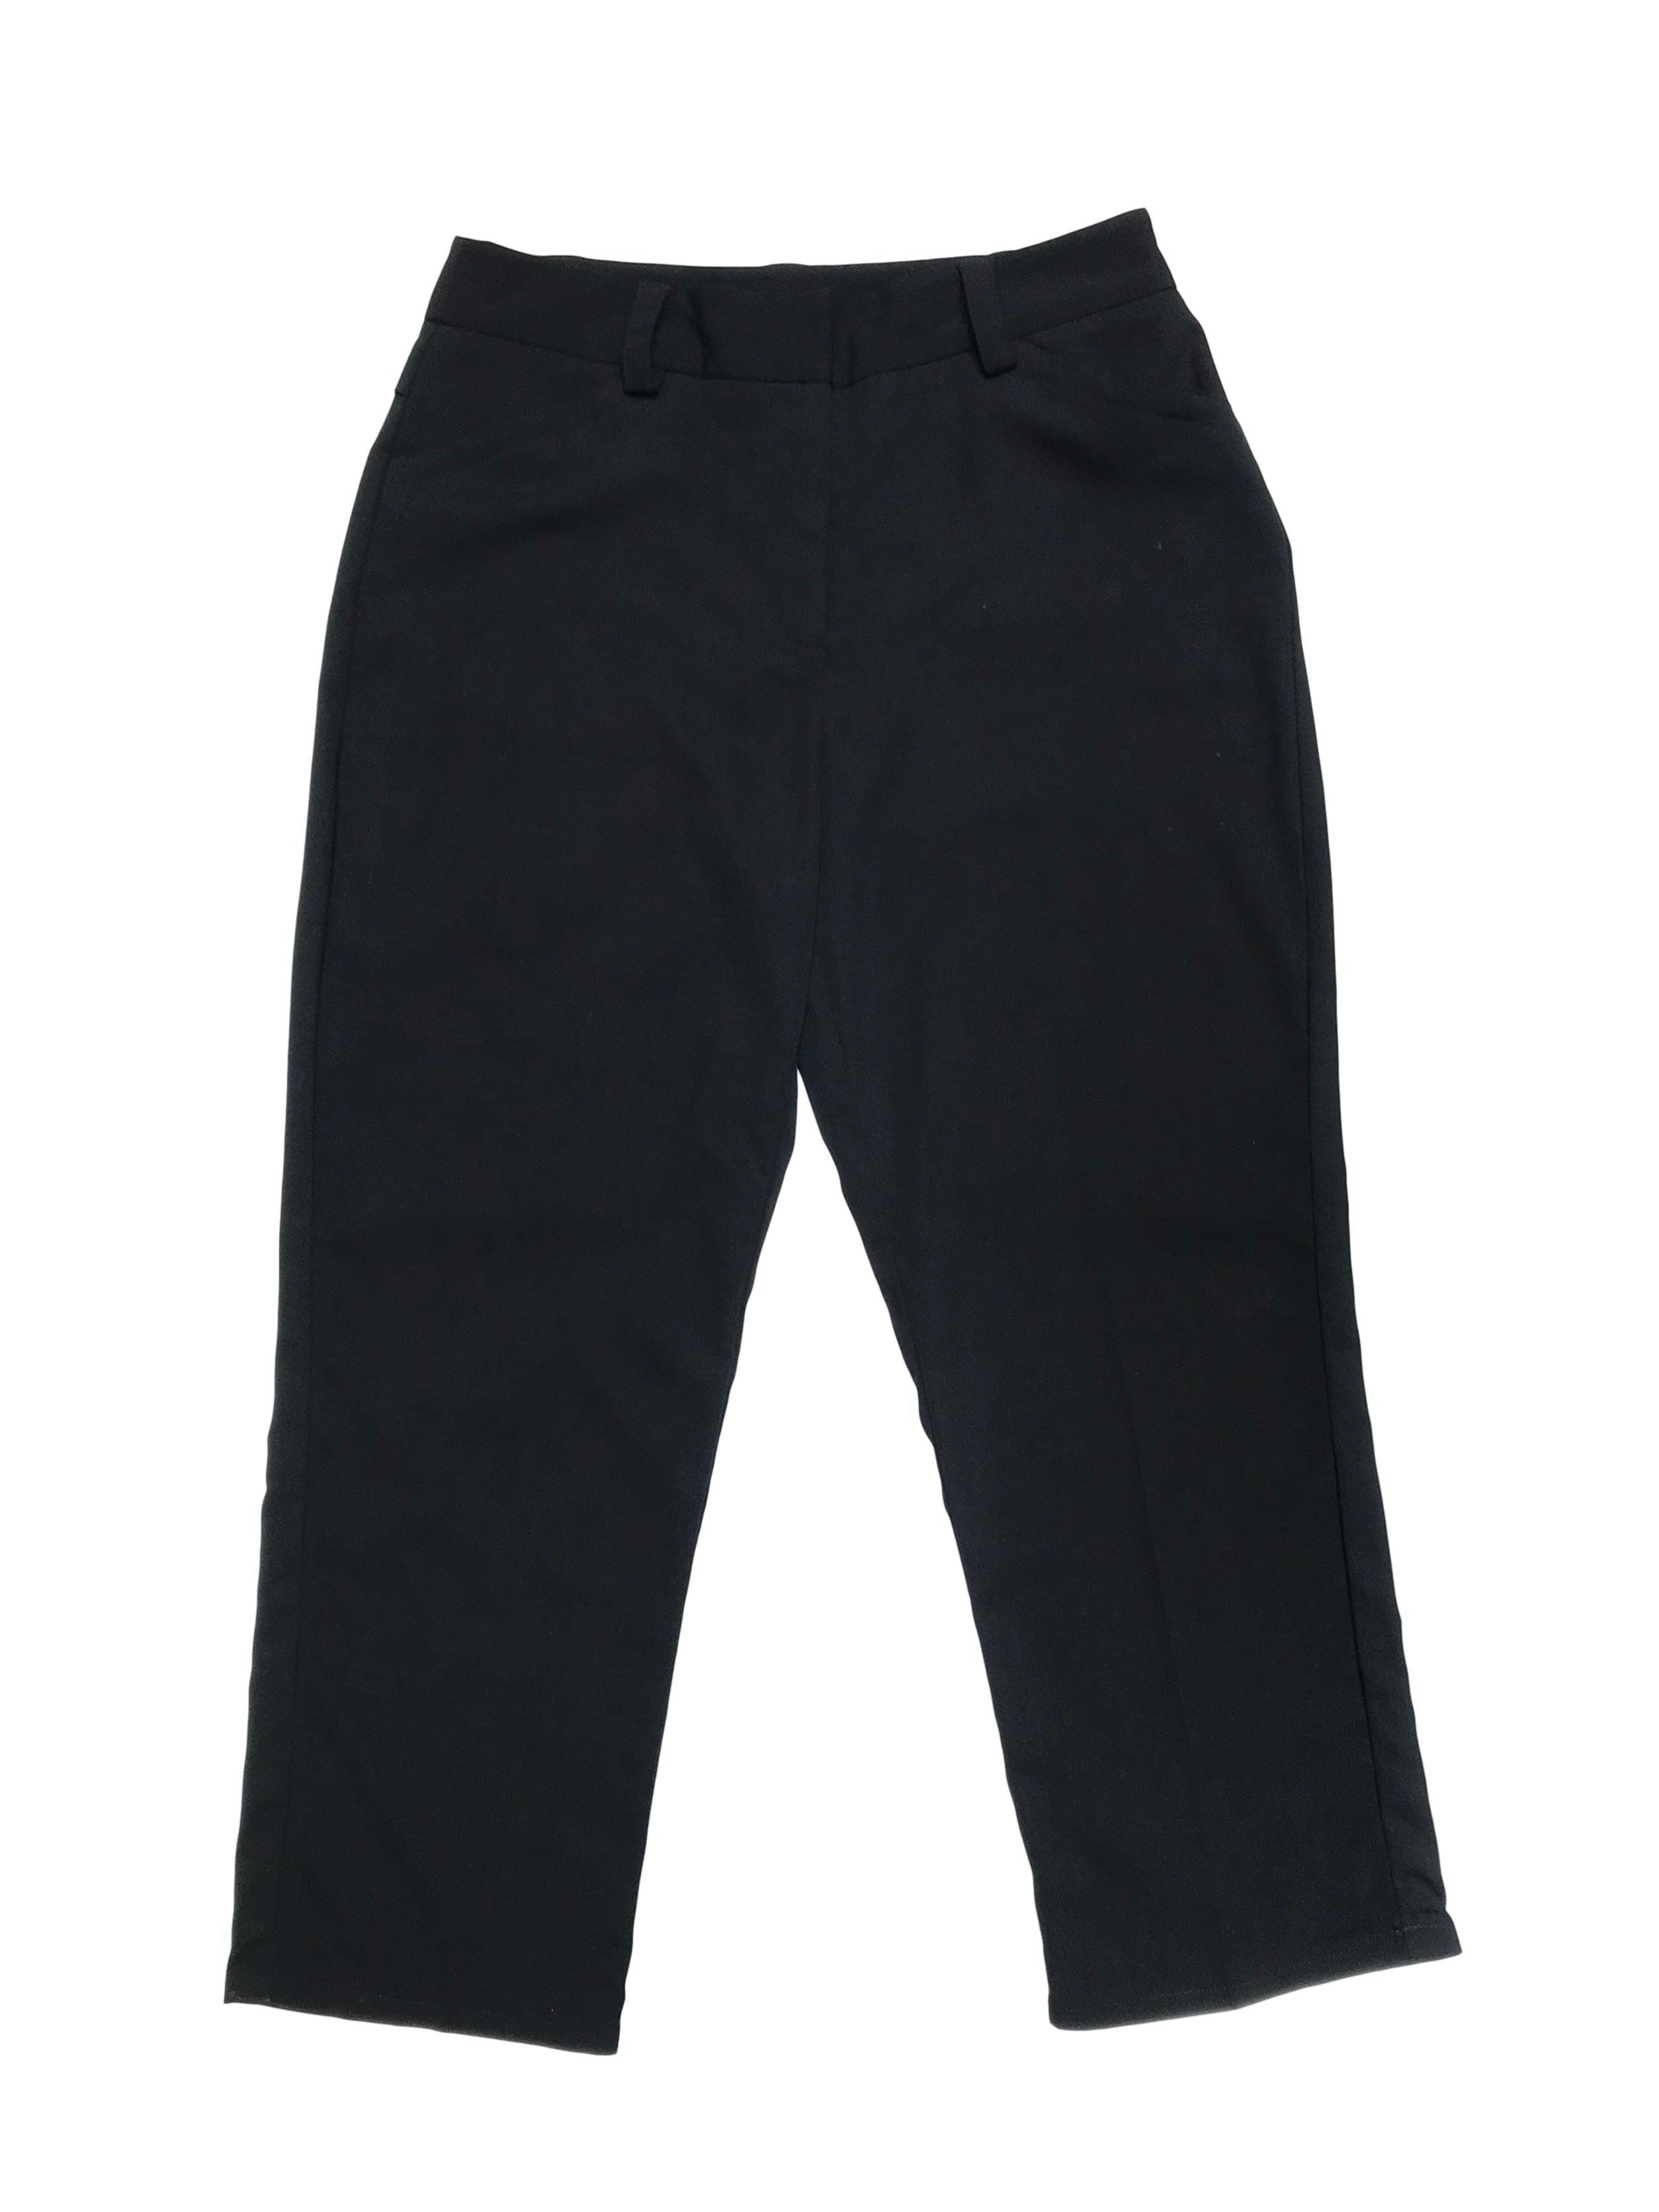 Pantalón a la cintura y largo al tobillo, negro, con bolsillos laterales. Cintura 76cm Largo 88cm